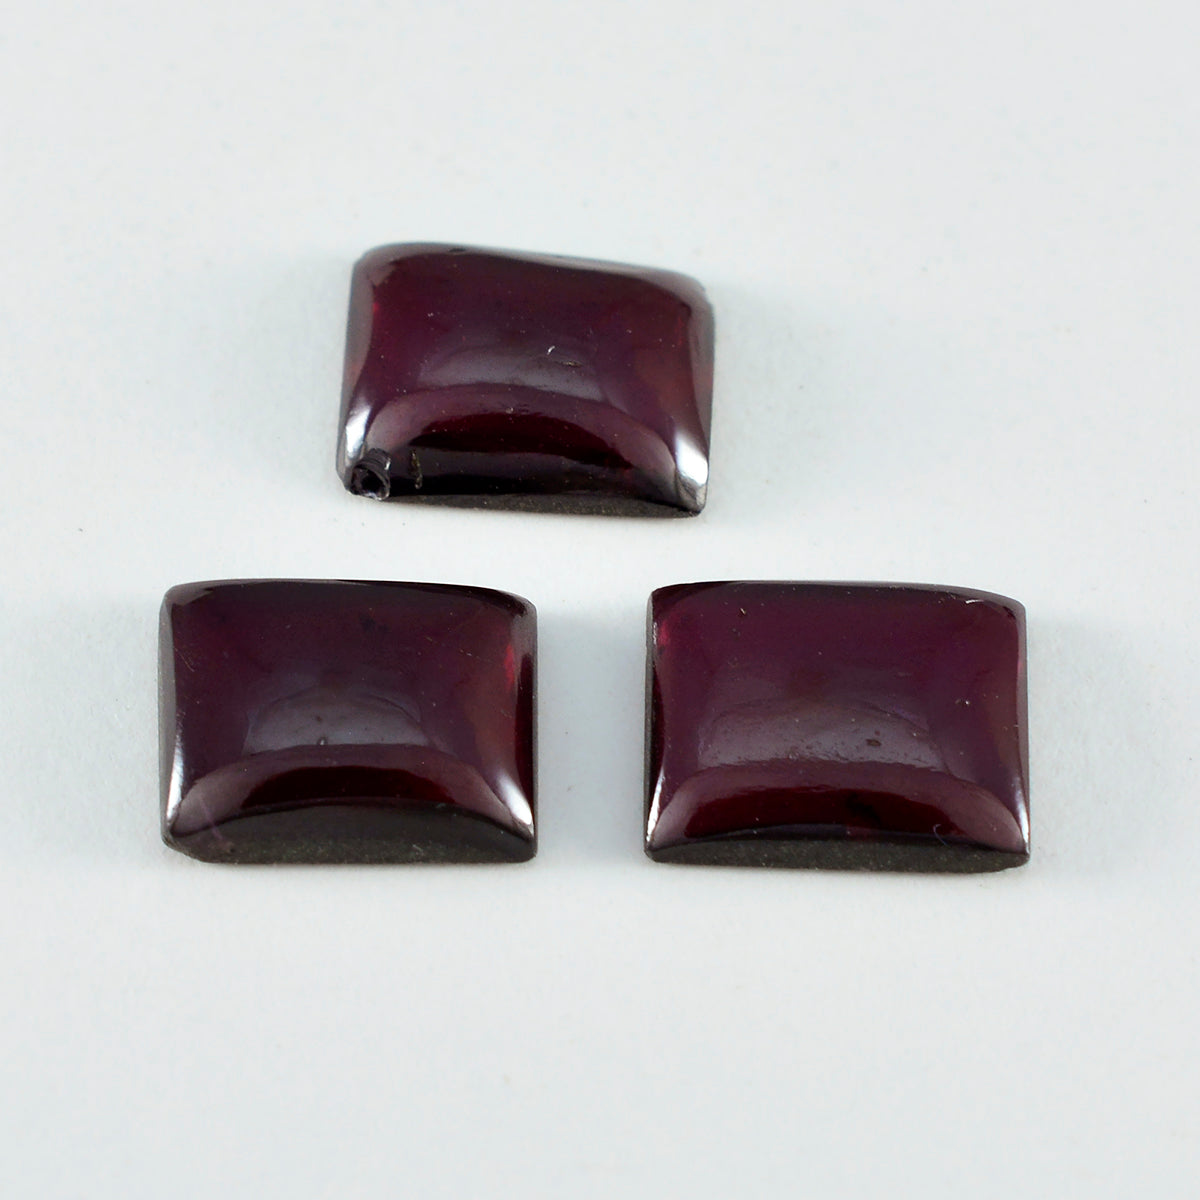 Riyogems 1 Stück roter Granat-Cabochon, 10 x 14 mm, achteckige Form, Schönheitsqualitäts-Edelstein